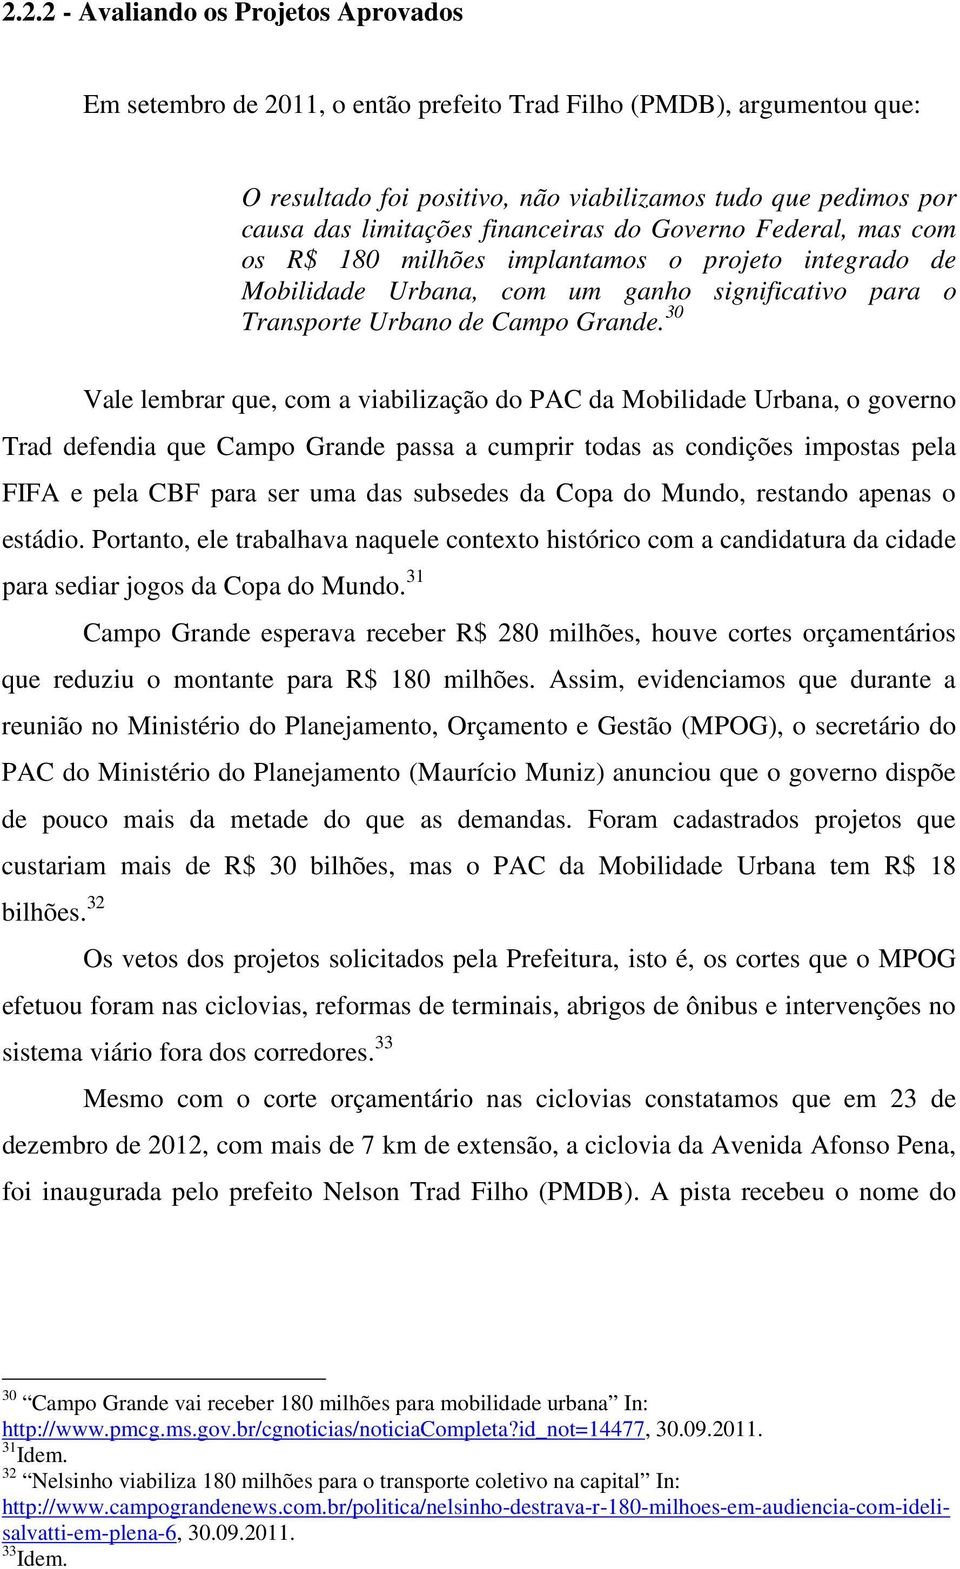 30 Vale lembrar que, com a viabilização do PAC da Mobilidade Urbana, o governo Trad defendia que Campo Grande passa a cumprir todas as condições impostas pela FIFA e pela CBF para ser uma das